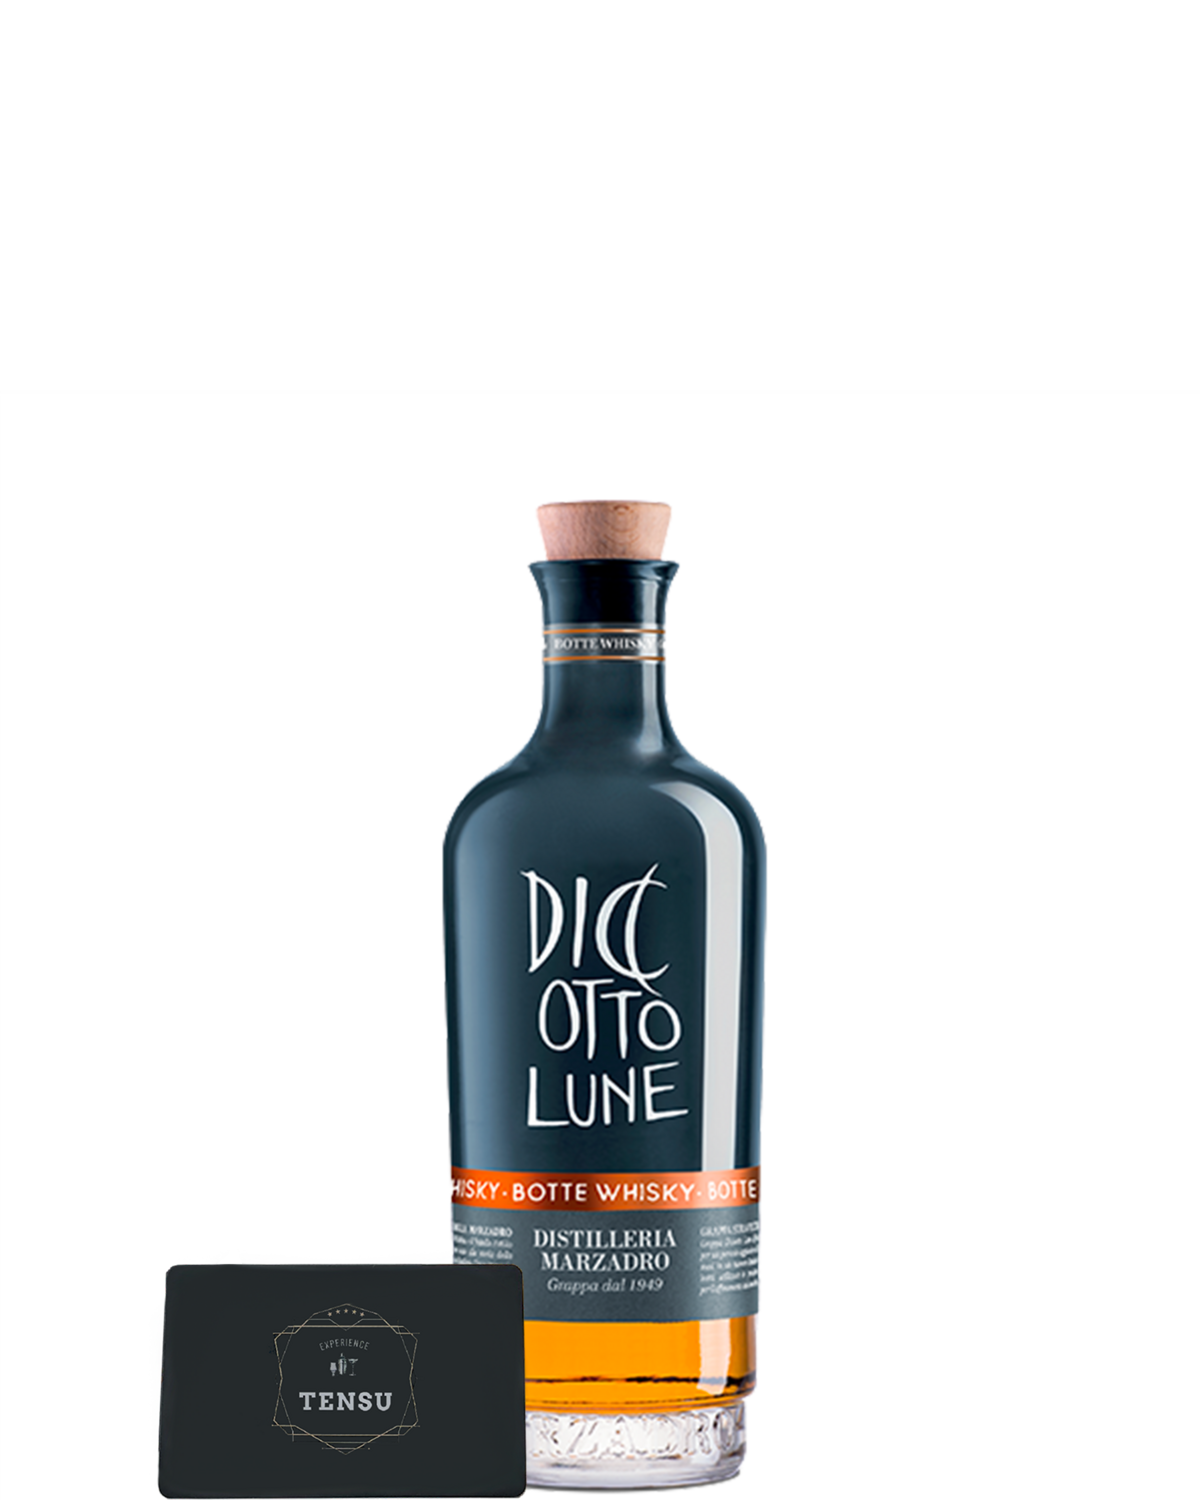 Grappa Marzadro Diciotto Lune Botte Whisky 42.0 (20CL) "OB"